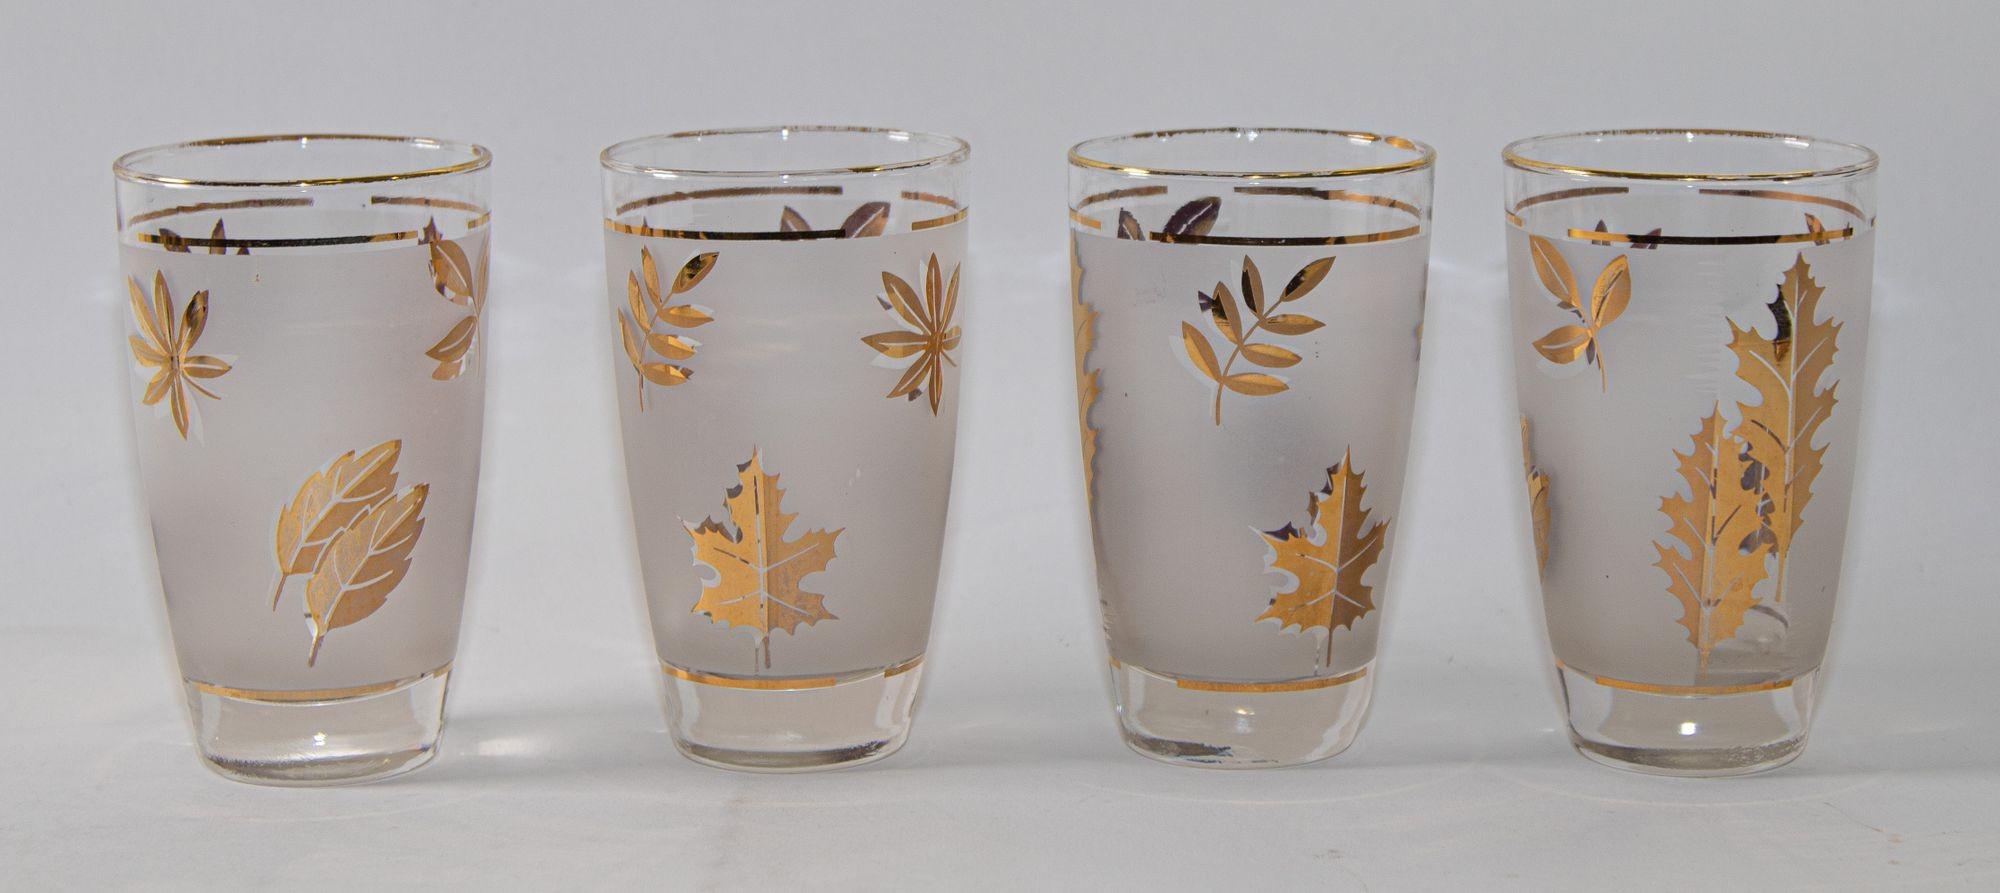 Vintage Mid-Century Modern libbey frosted & golden foliage cocktail glasses, set of 4.
Élégants verres givrés vintage Libbey Golden Foliage avec un motif de feuilles dans une finition dorée. L'ensemble comprend 4 verres highball.
Verres vintage